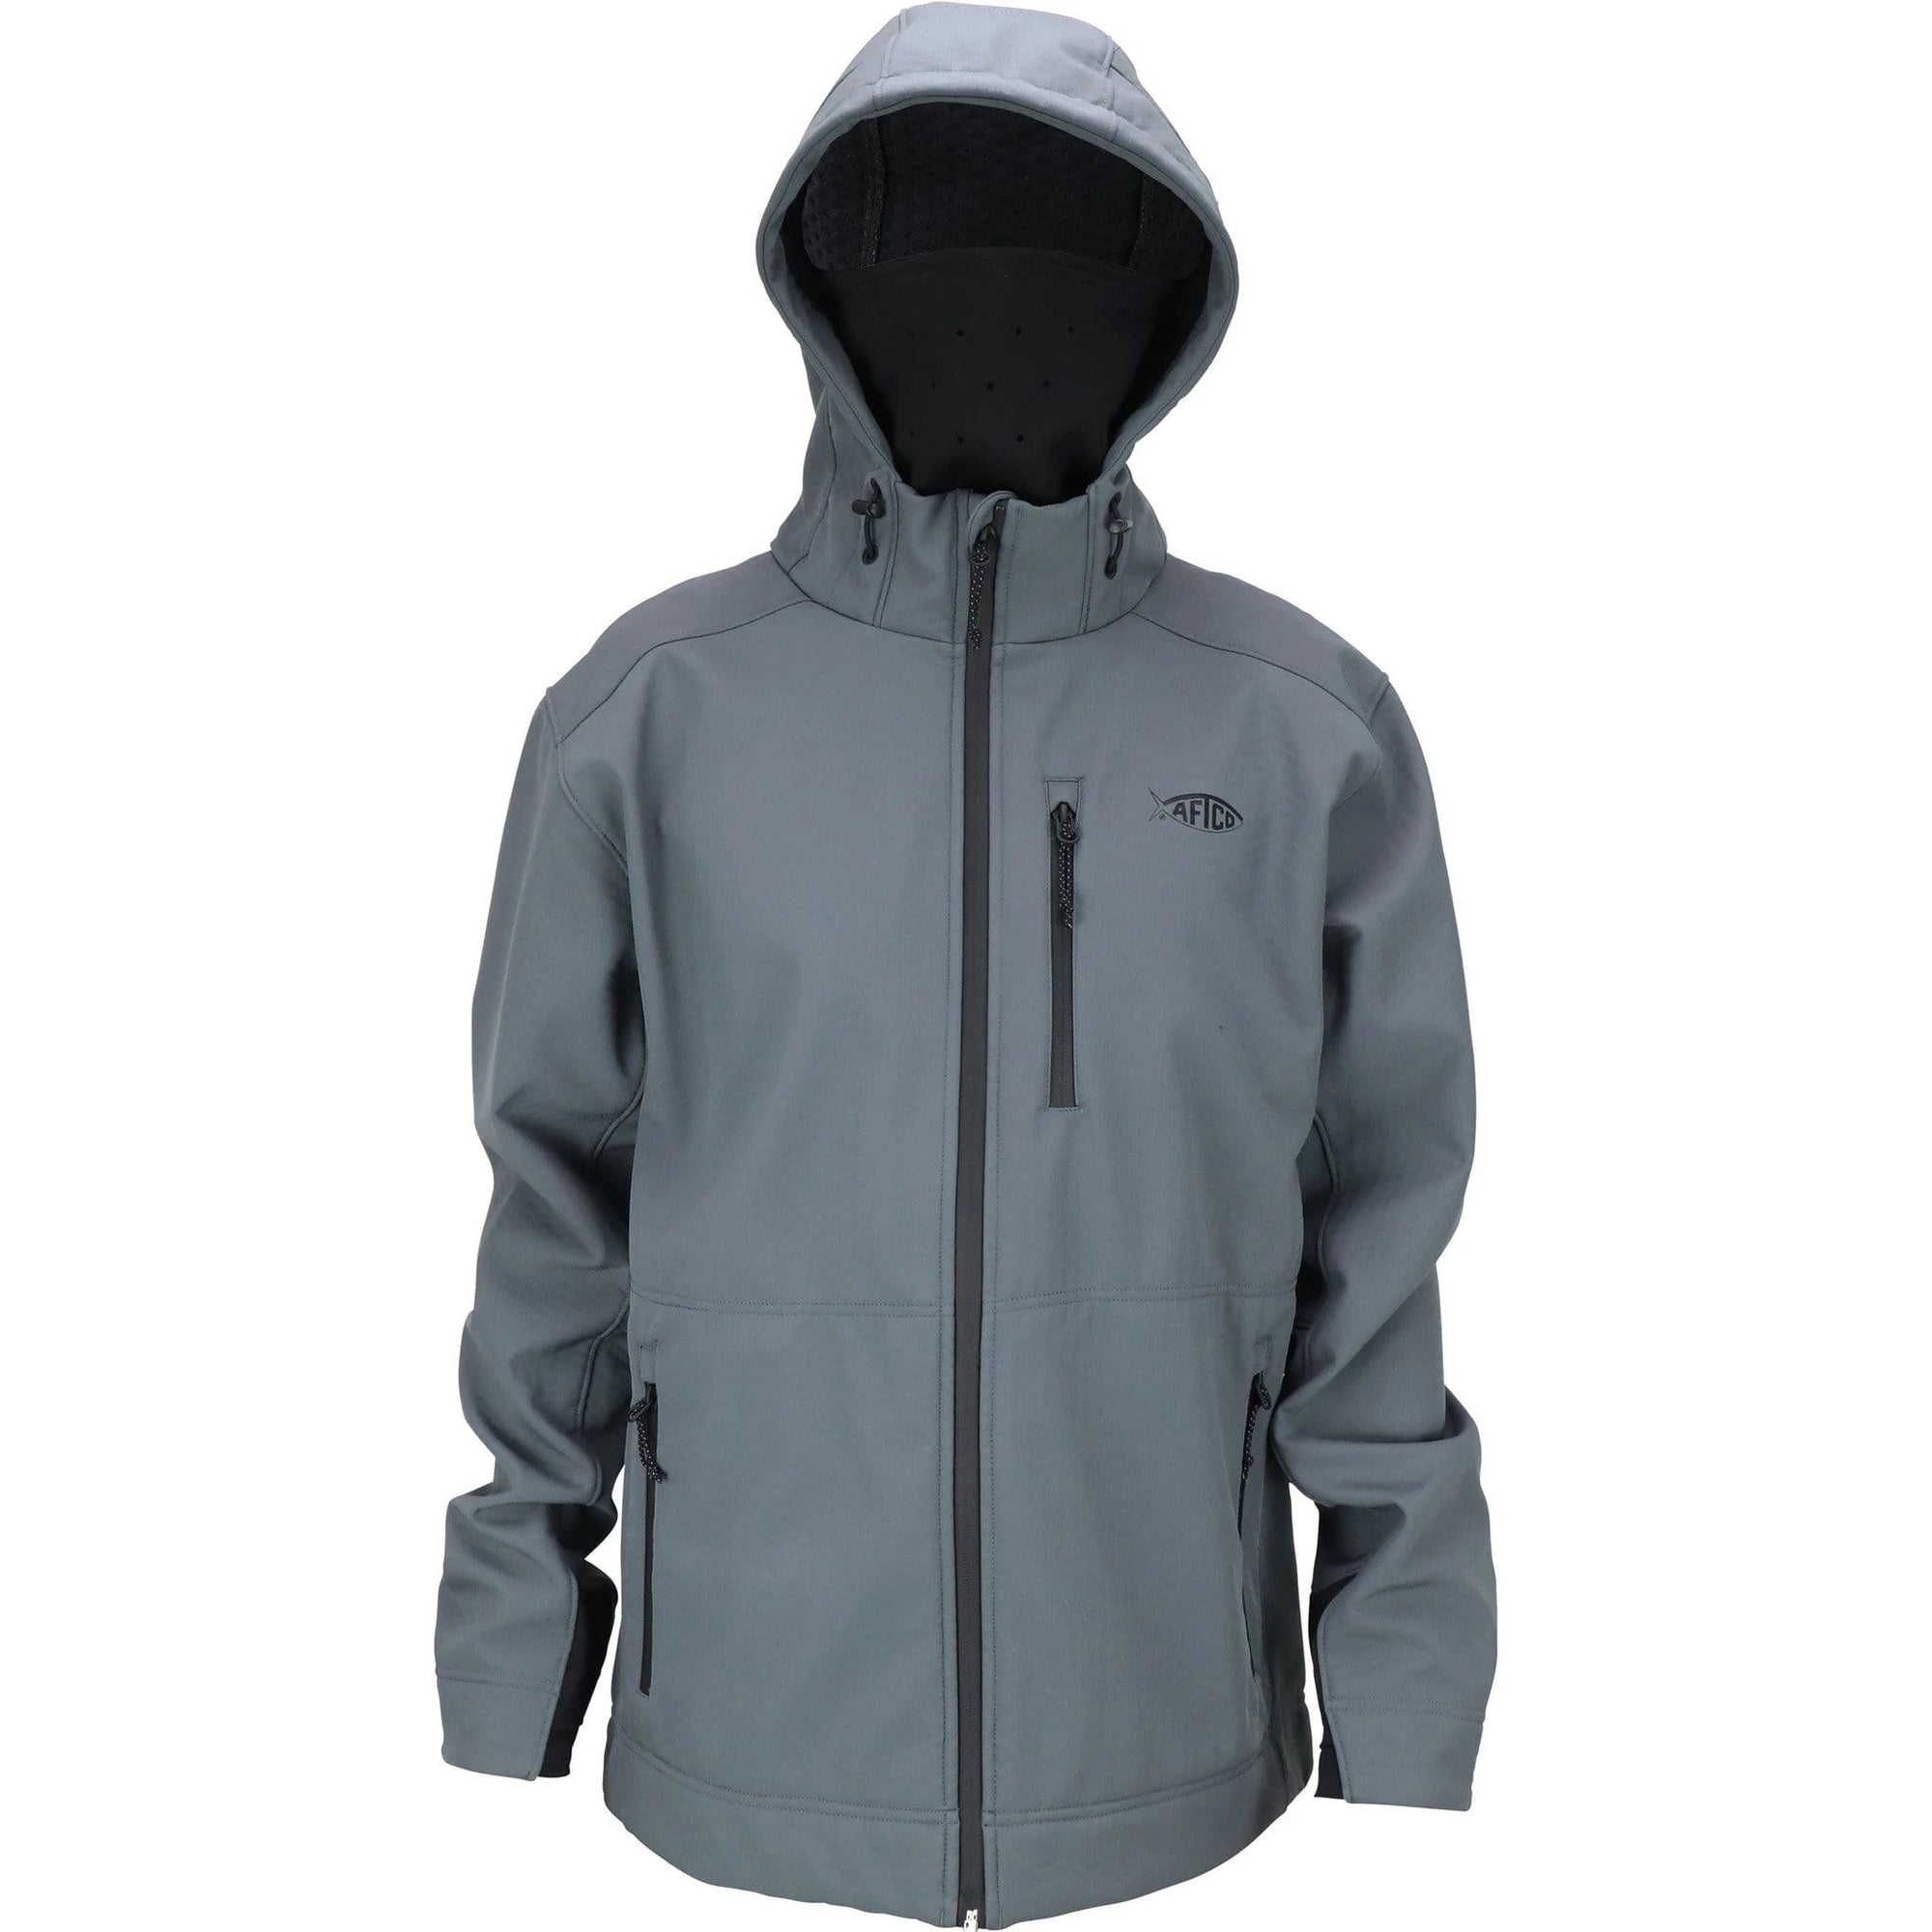 Aftco Reaper Windproof  Zip Up Jacket Charcoal / Medium